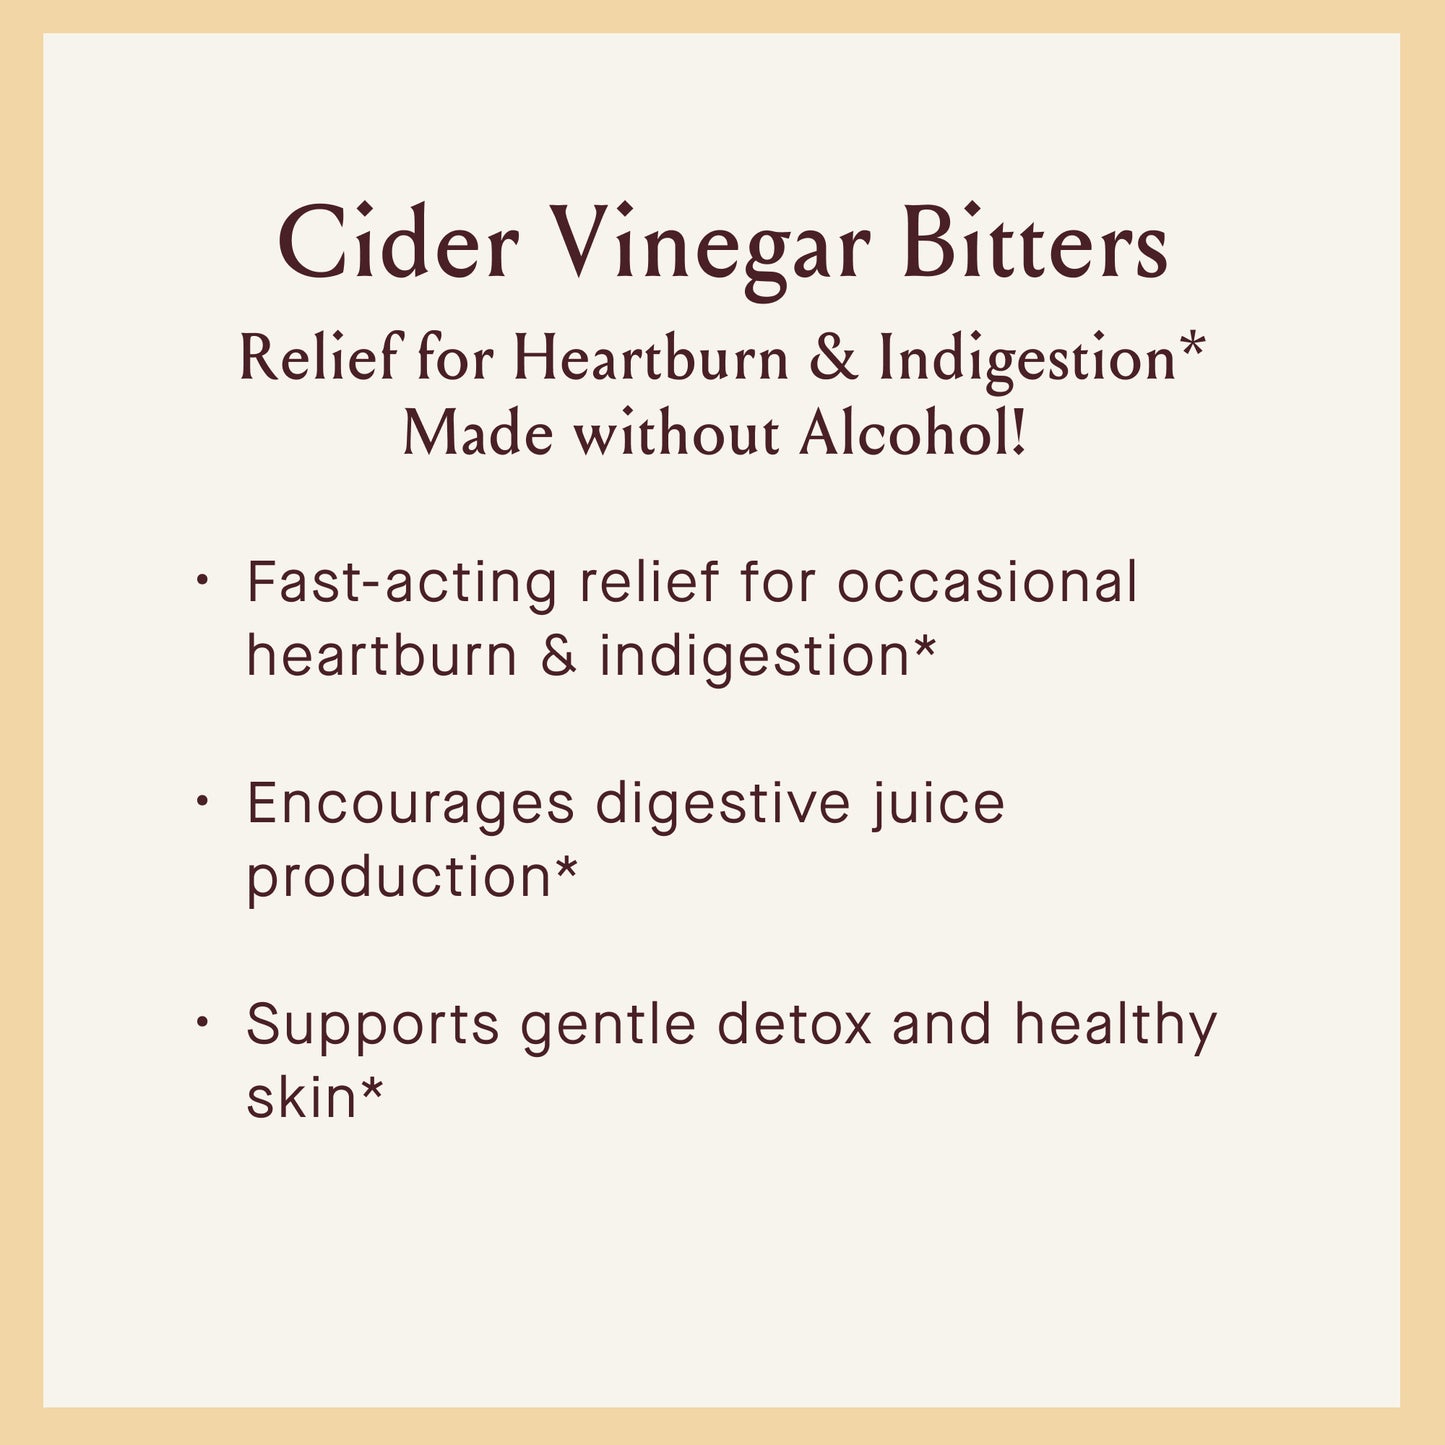 Cider Vinegar Bitters